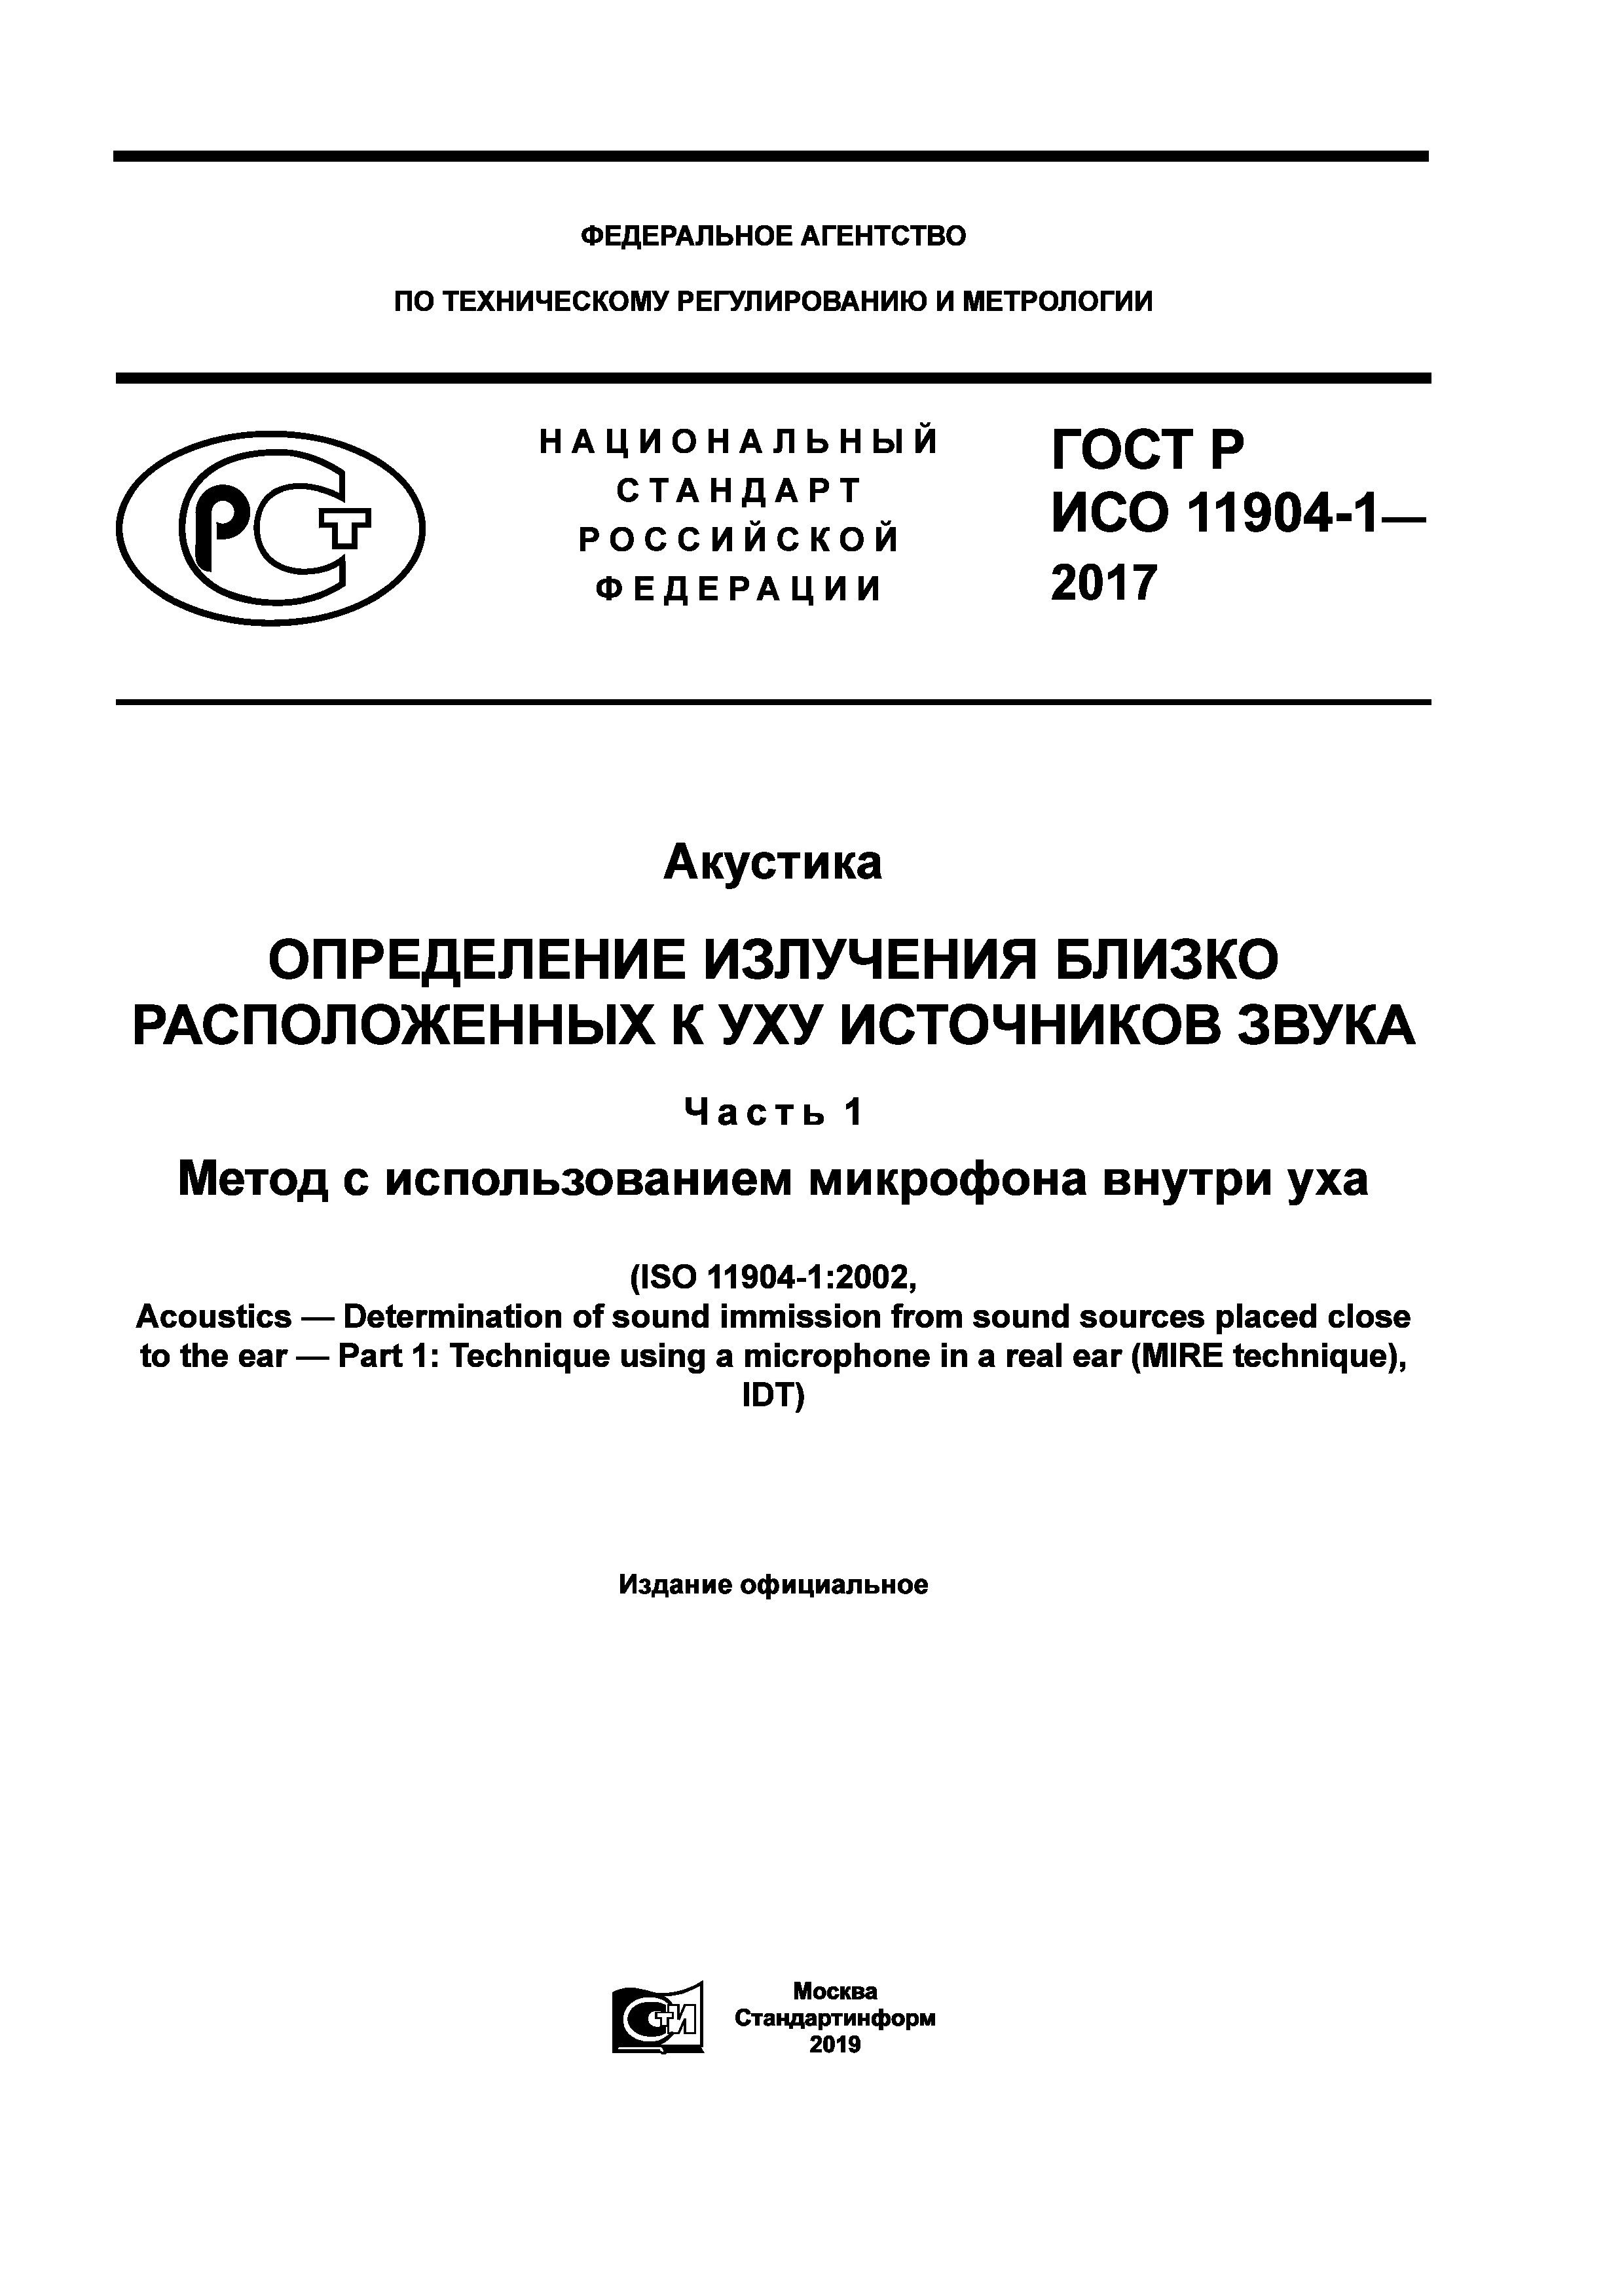 ГОСТ Р ИСО 11904-1-2017